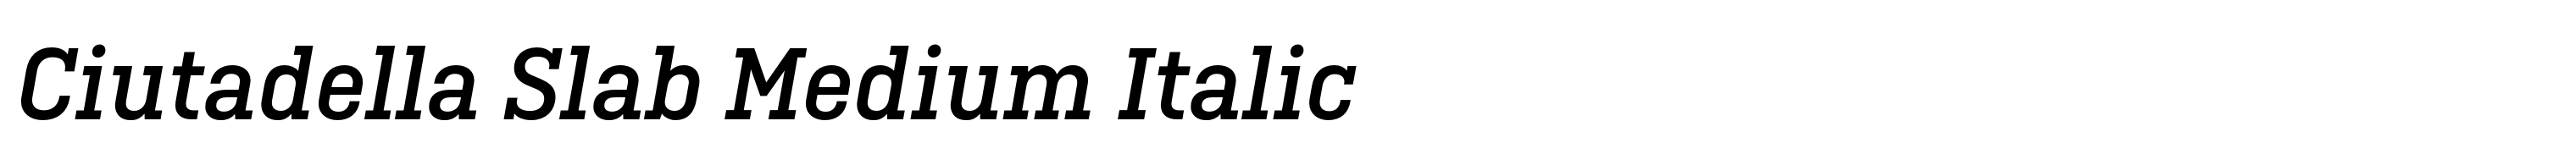 Ciutadella Slab Medium Italic